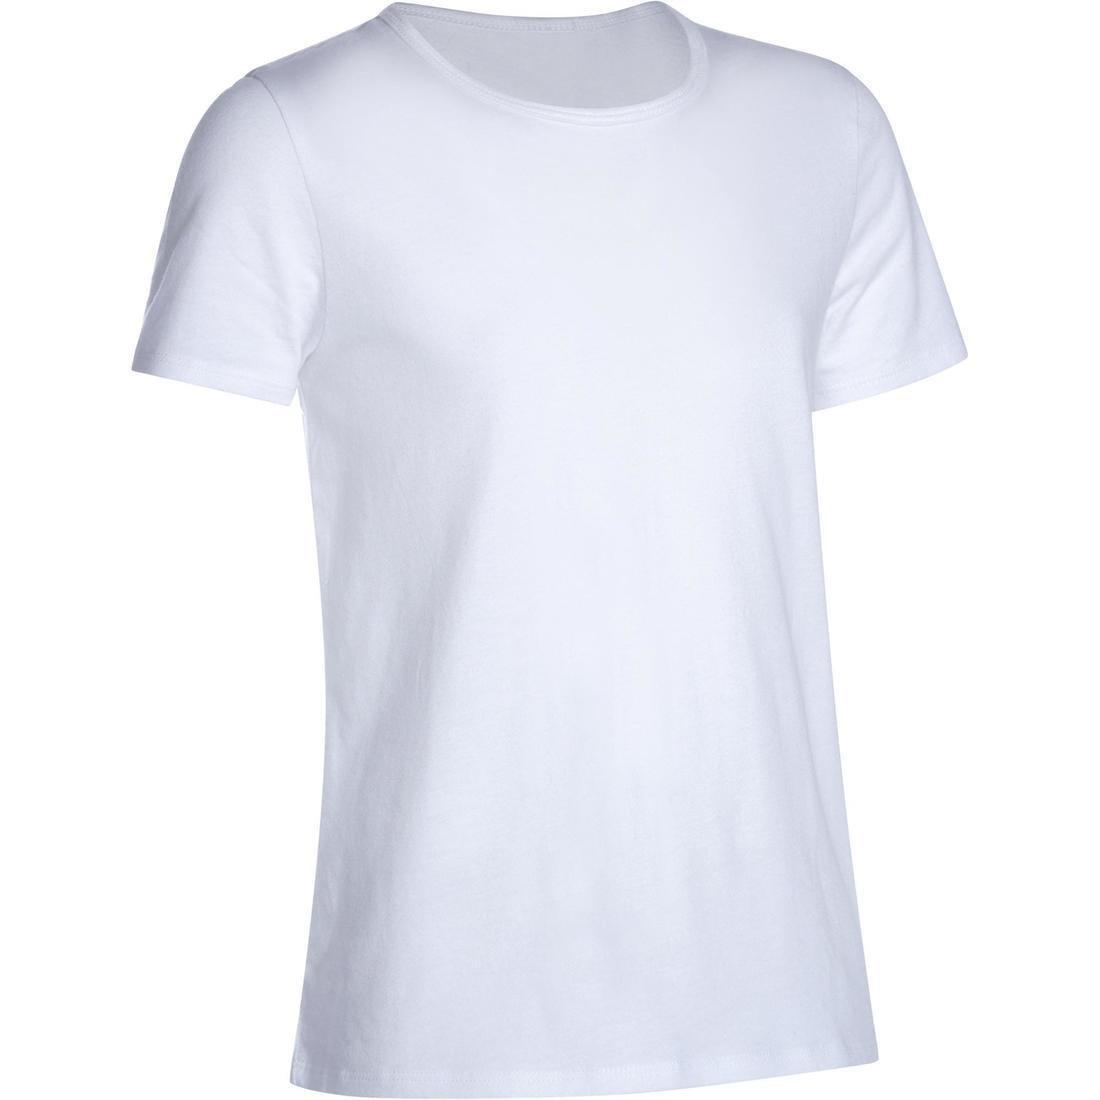 DOMYOS - Girls 100 Short-Sleeved Gym T-Shirt, White